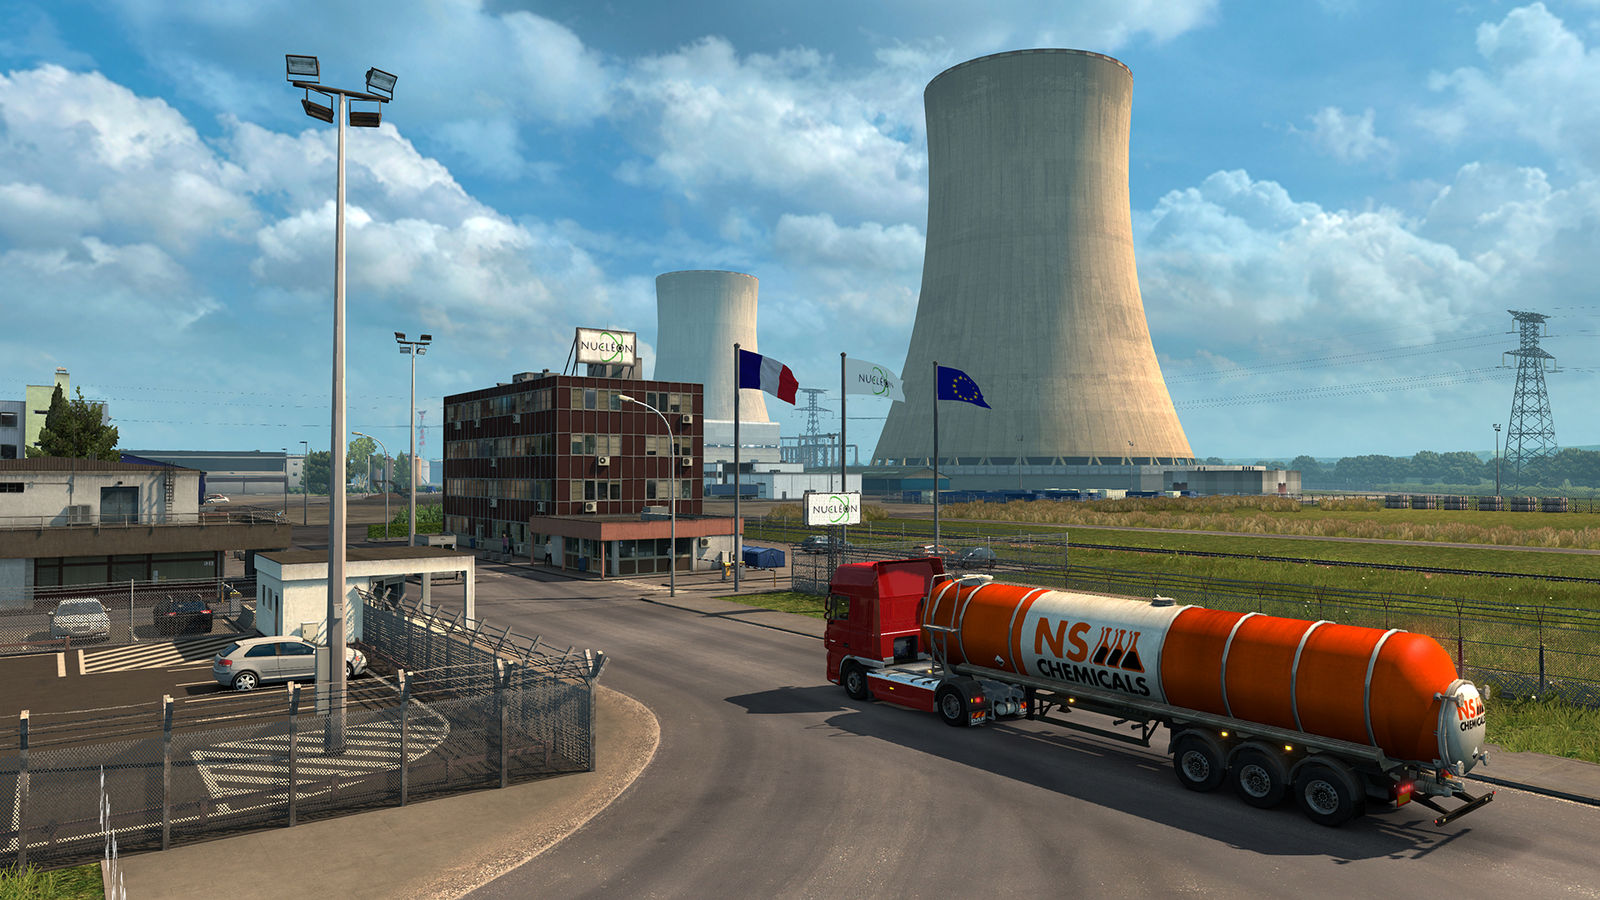 Euro Truck Simulator 2 - Vive la France! (Steam) RU/CIS